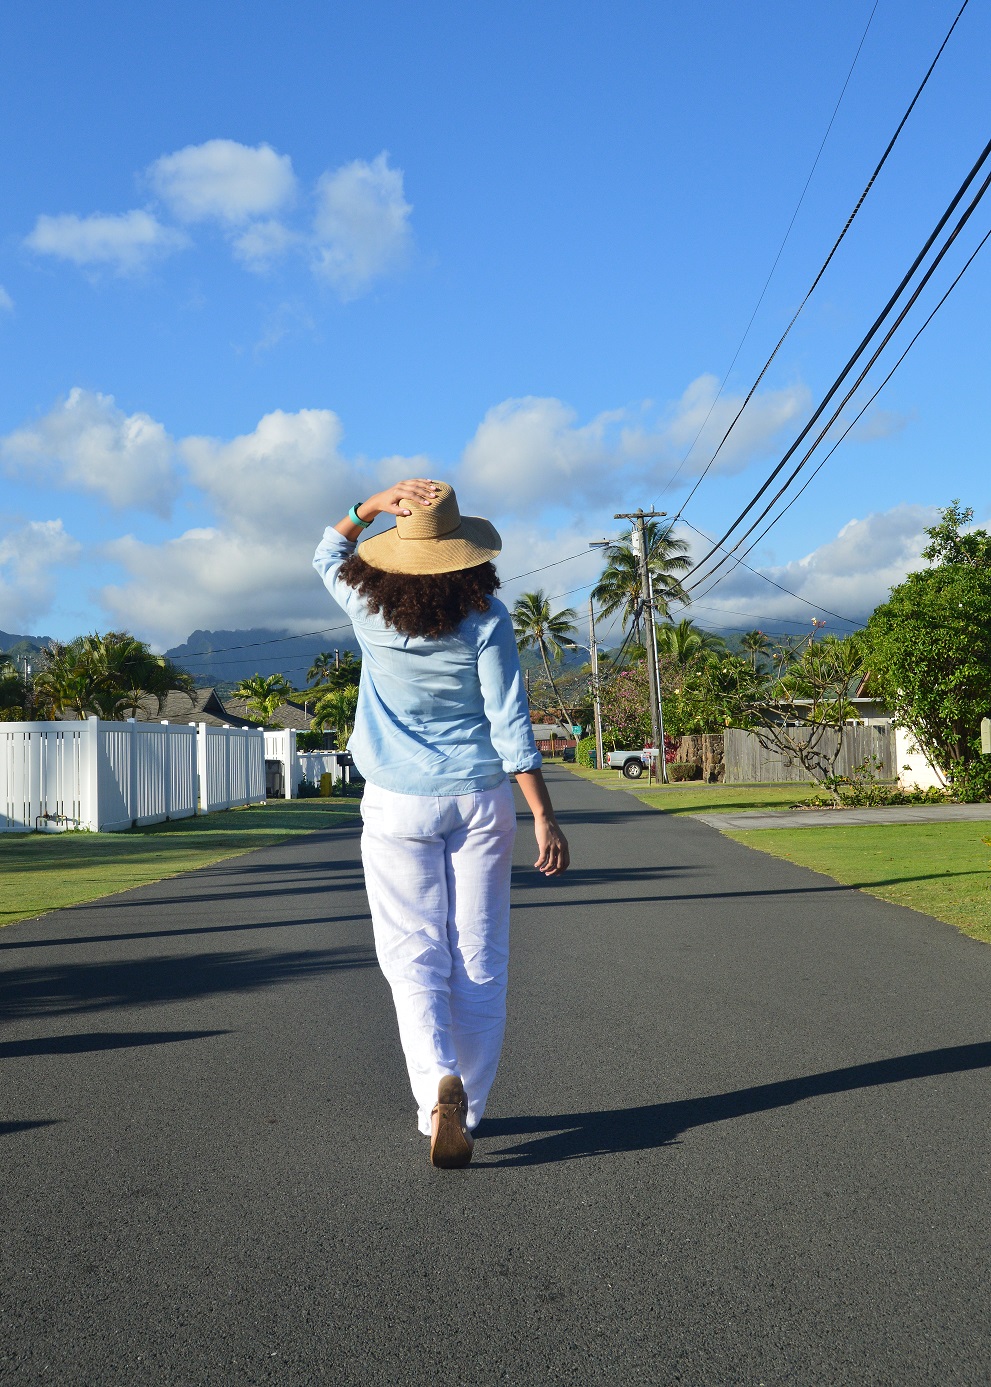 Walking on a quiet street in Oahu Hawaii